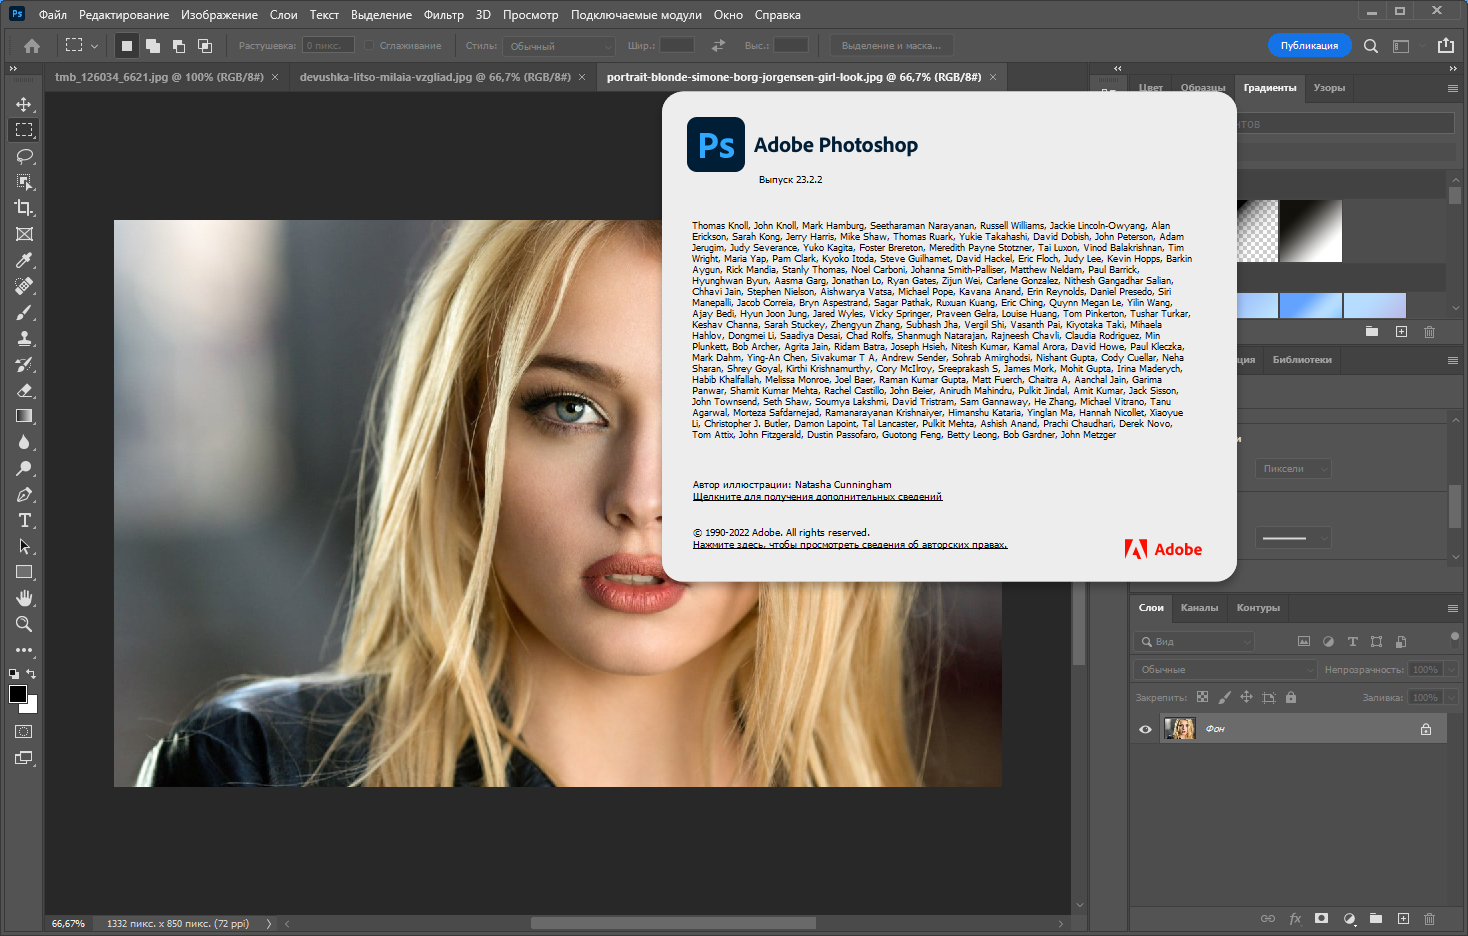 Adobe Photoshop 2022 23.2.2.325 RePack by KpoJIuK [Multi/Ru]